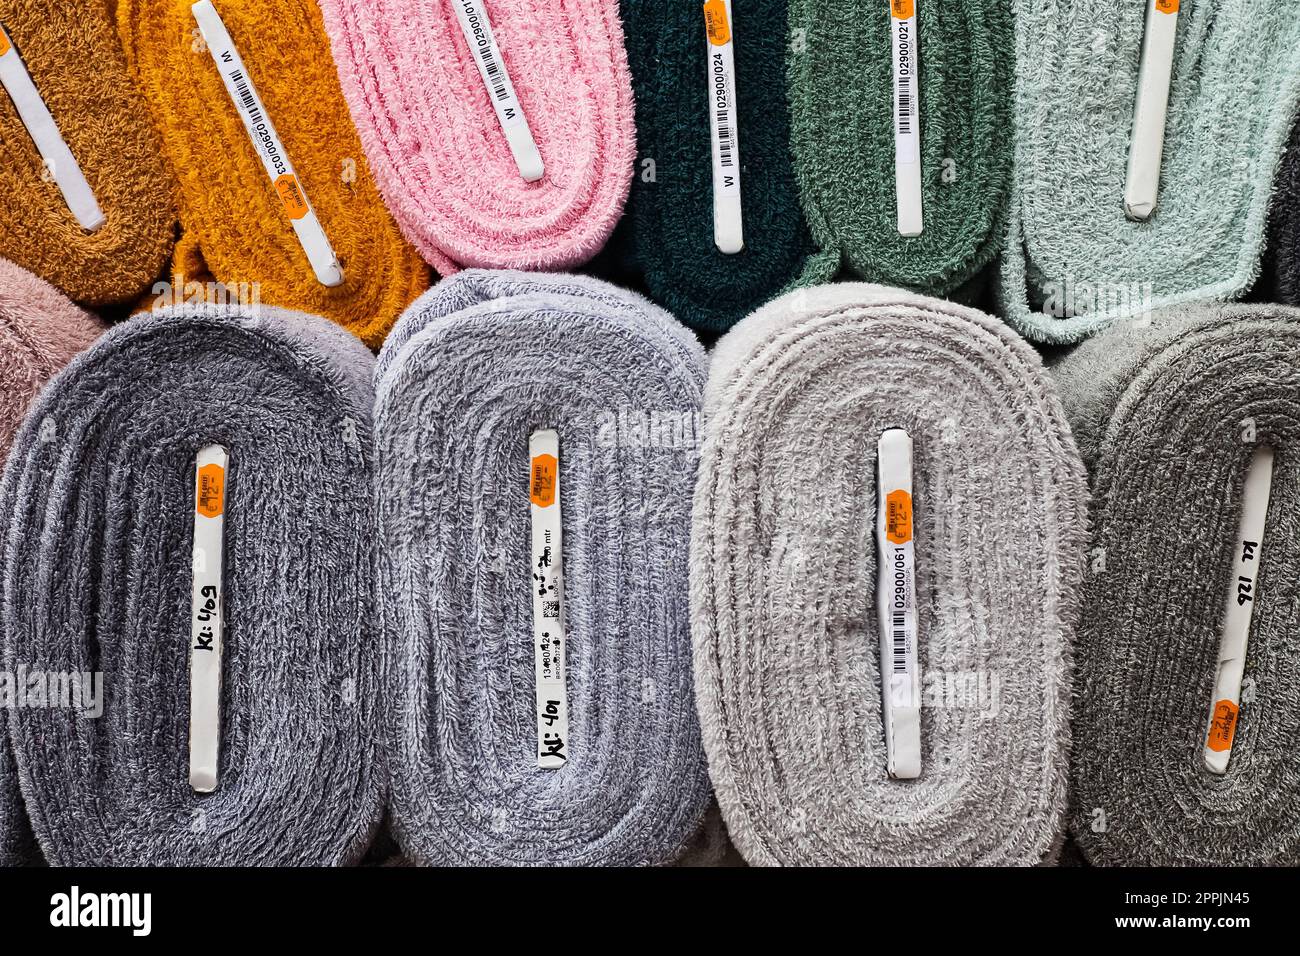 Kiel, Allemagne - 16. Octobre 2022 : échantillons de tissus et de tissus avec des signes de prix dans différentes couleurs trouvés sur un marché de tissus Banque D'Images